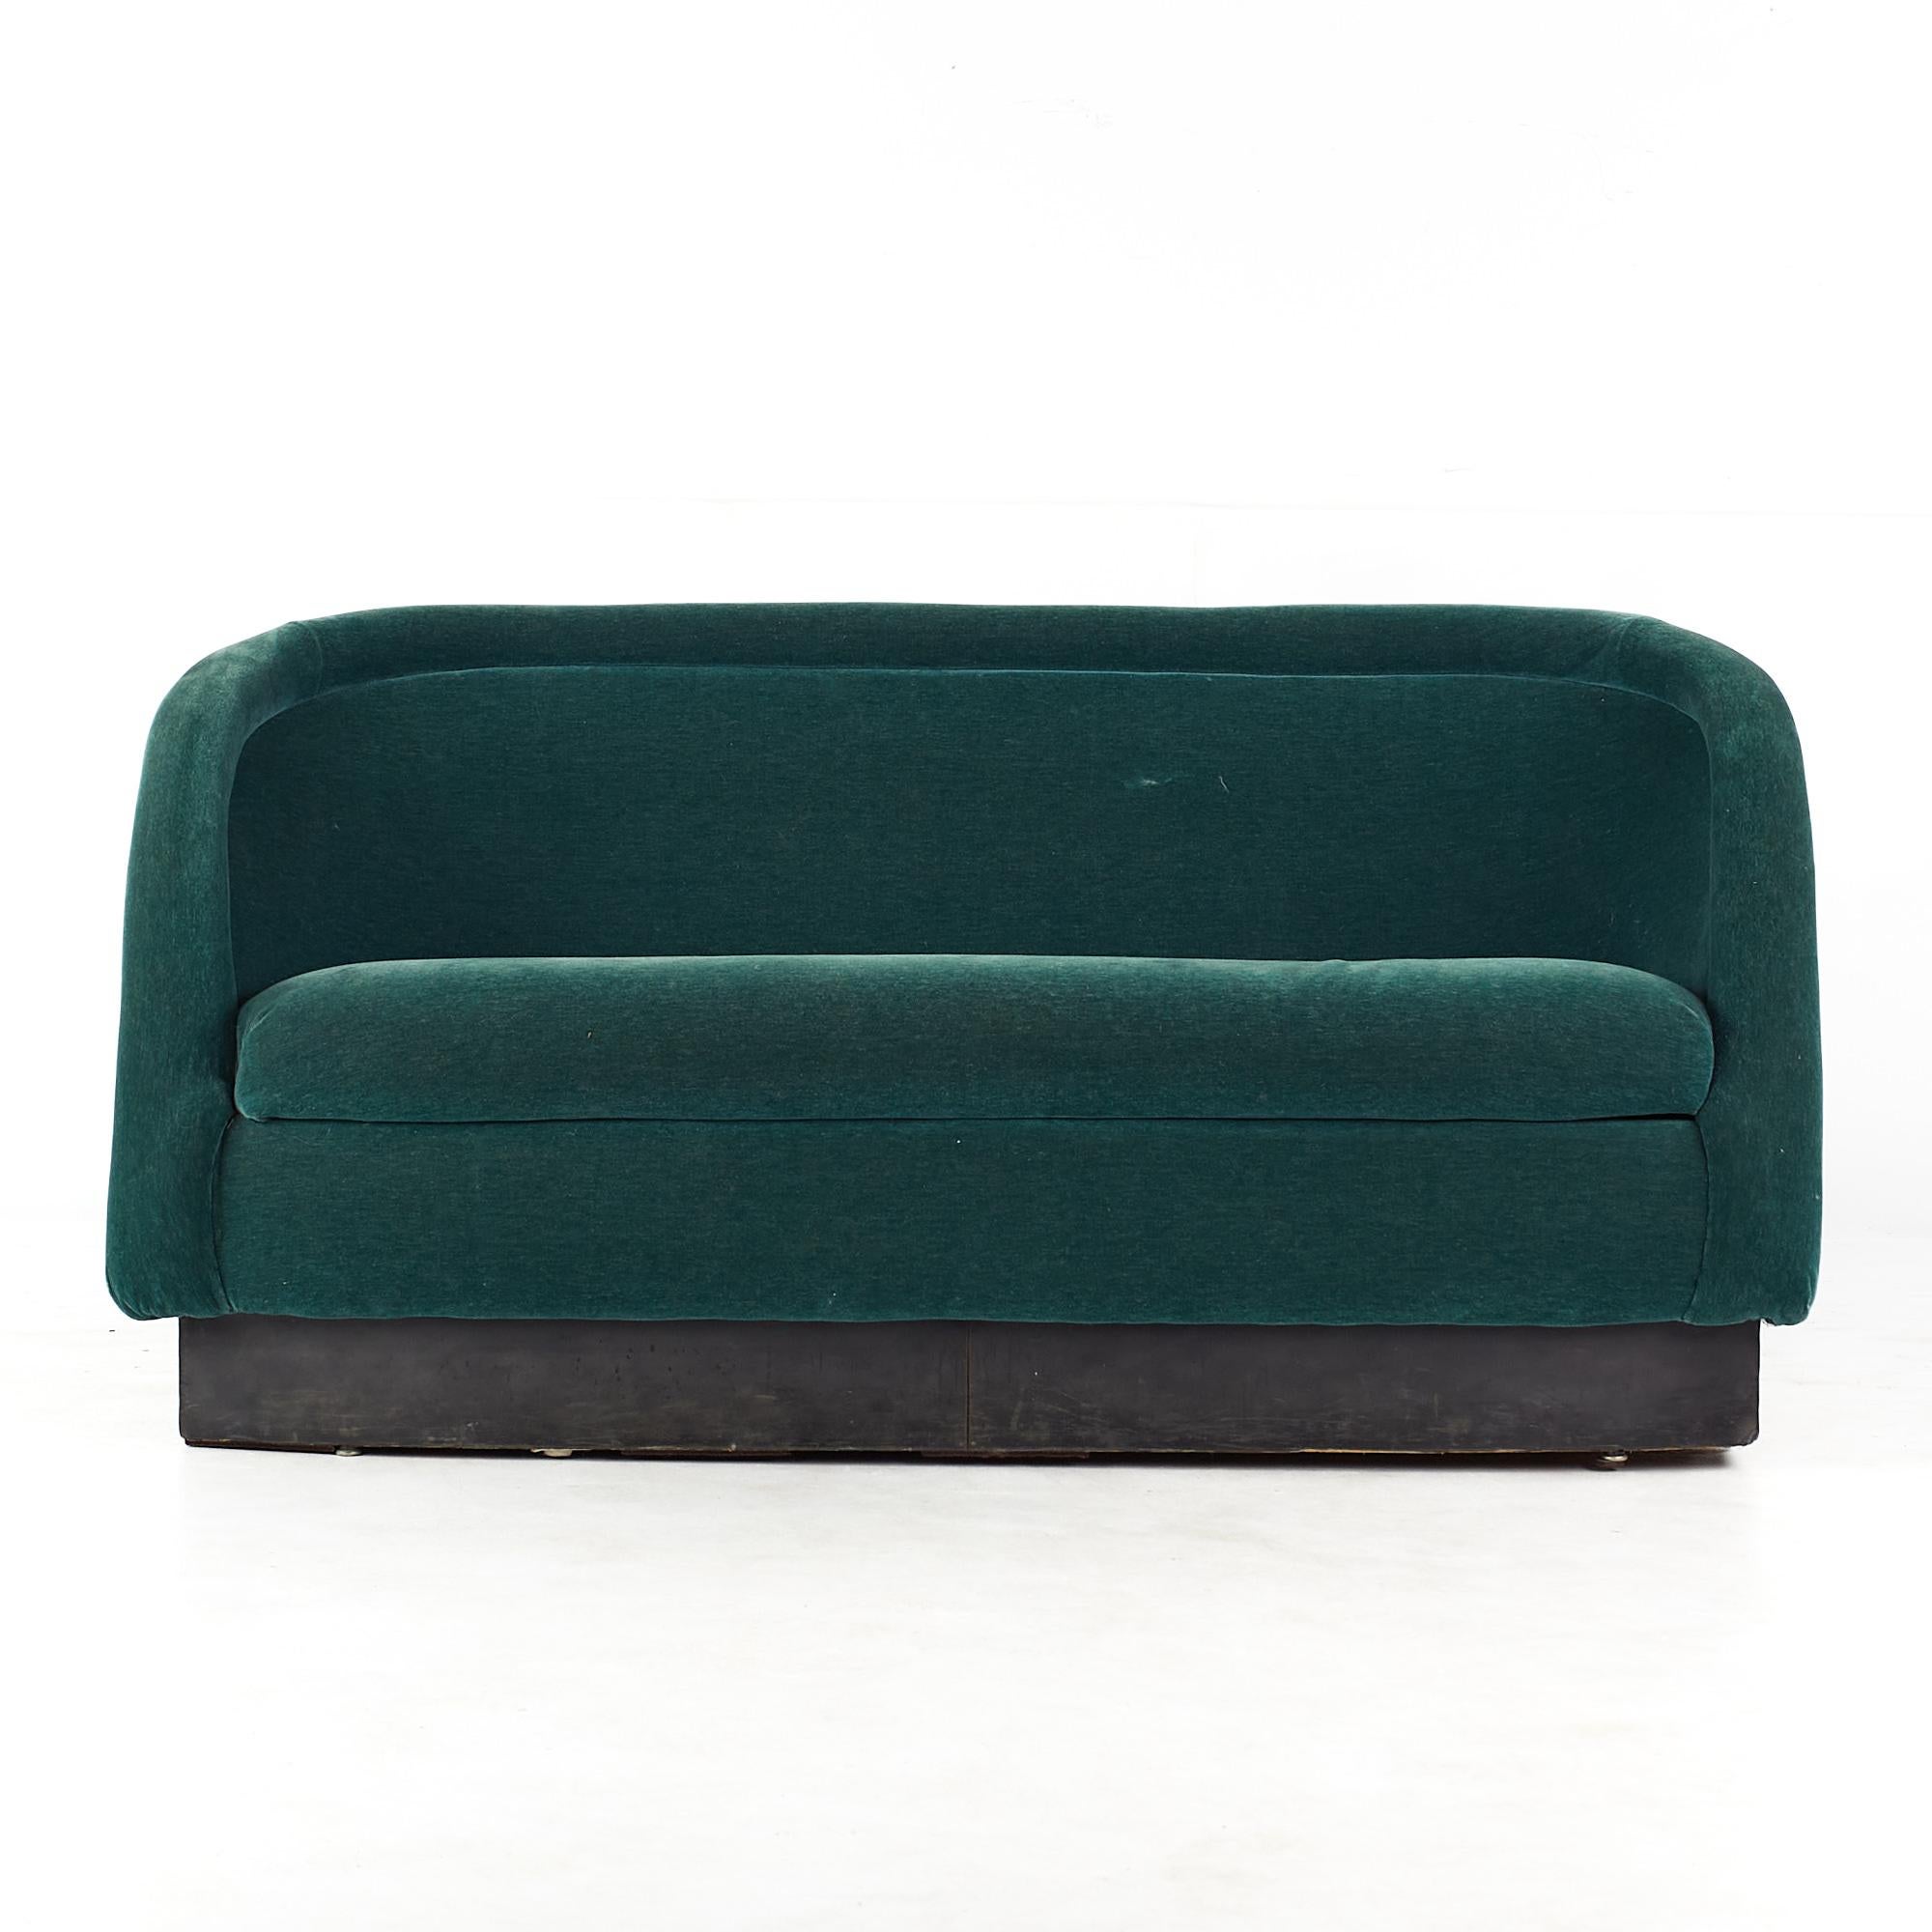 Sofa canapé en velours vert style Ward Bennett Mid Century

Ce canapé mesure : 61 pouces de largeur x 29 pouces de profondeur x 30.5 pouces de hauteur, avec une hauteur d'assise de 18 pouces.

Tous les meubles peuvent être achetés dans ce que nous